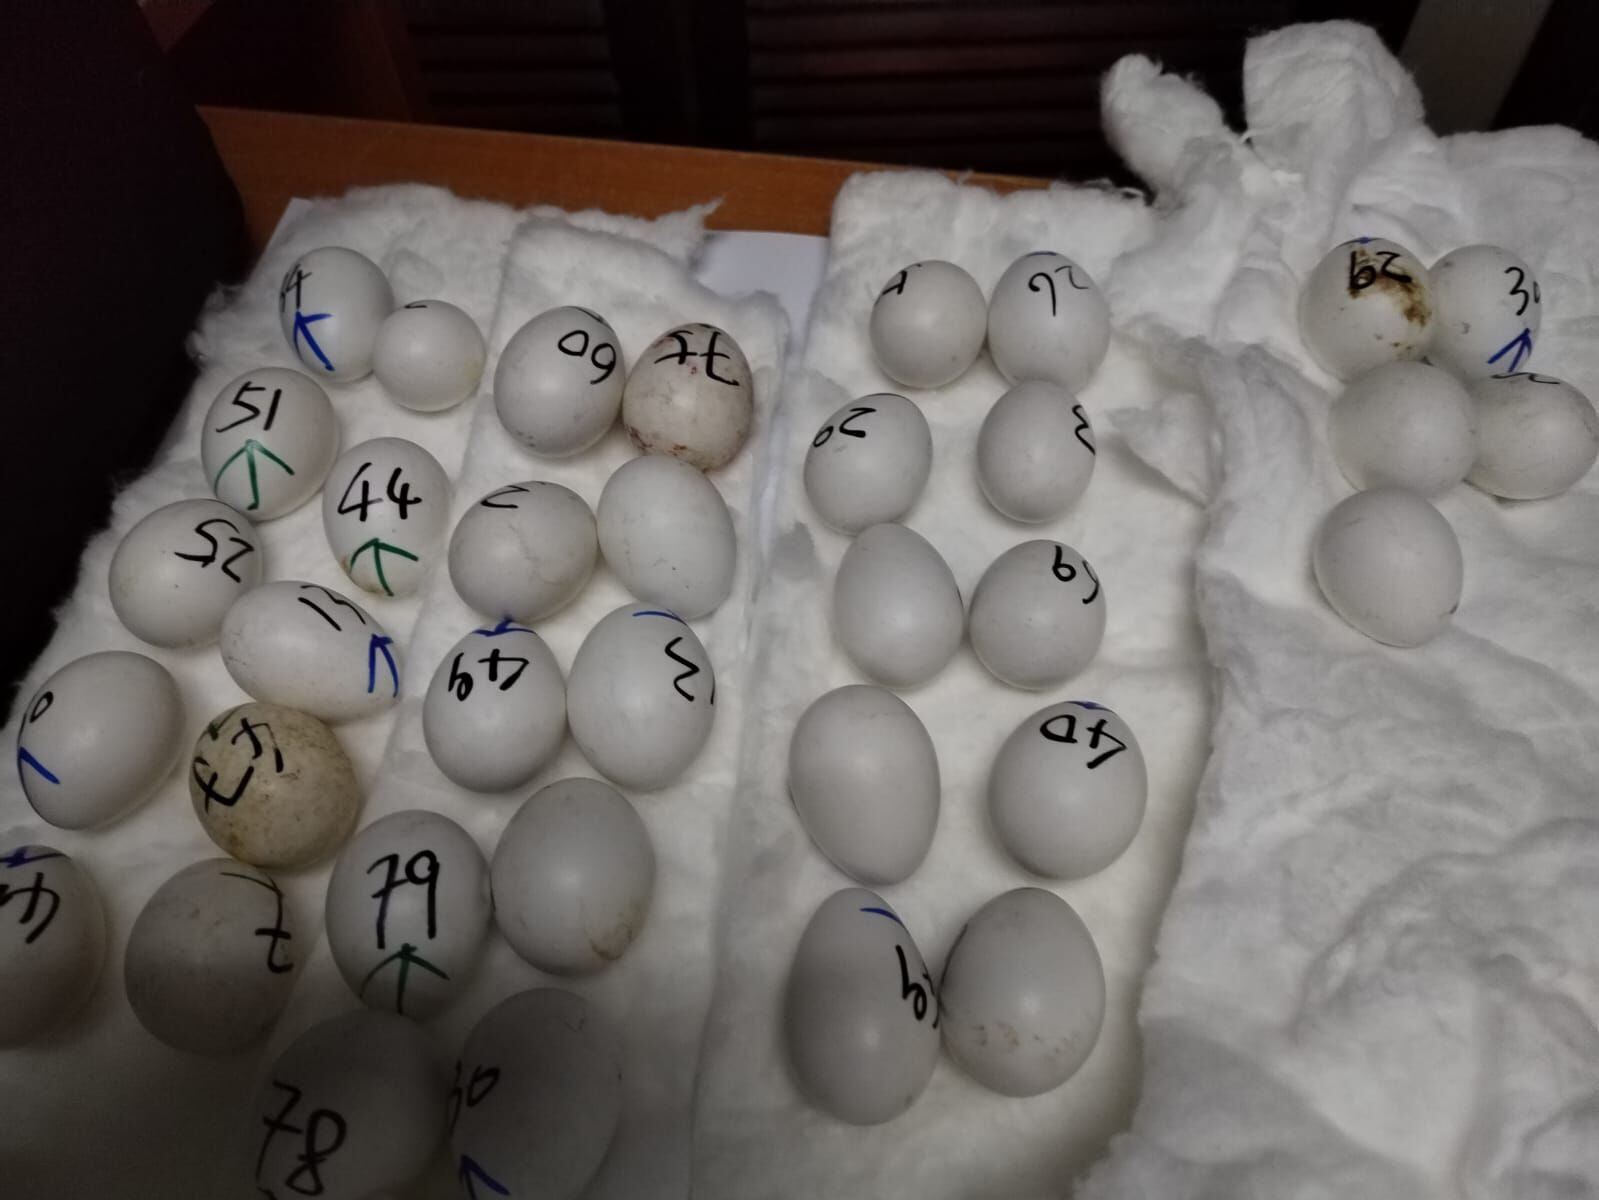 En uno de los operativos decomisaron 240 huevos de guacamayas. Cortesía